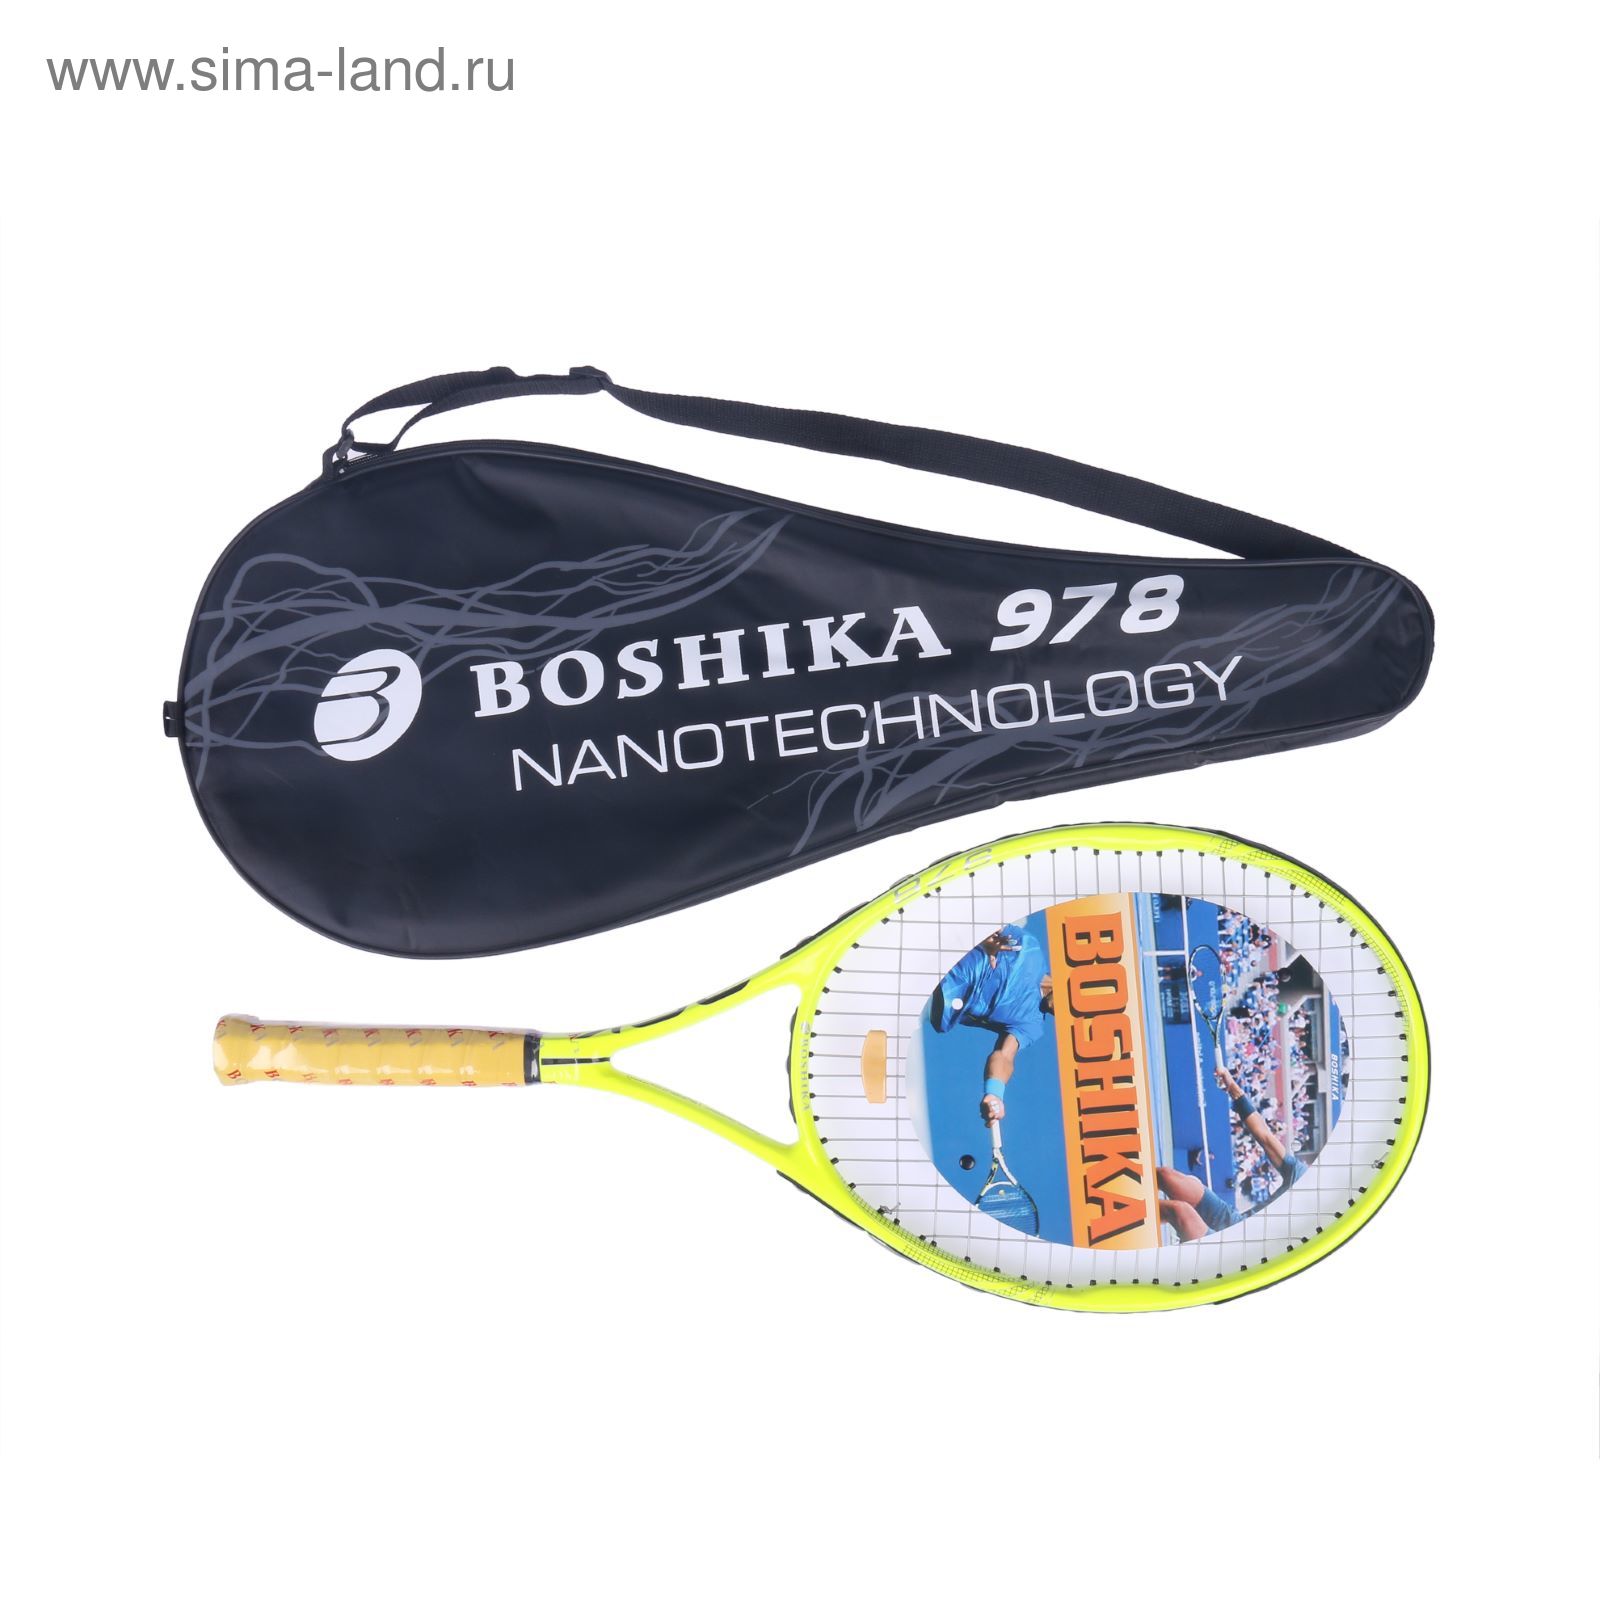 Ракетка для большого тенниса BOSHIKA 978 тренировочная, алюминиевая, 344 г, в чехле, цвет жёлтый